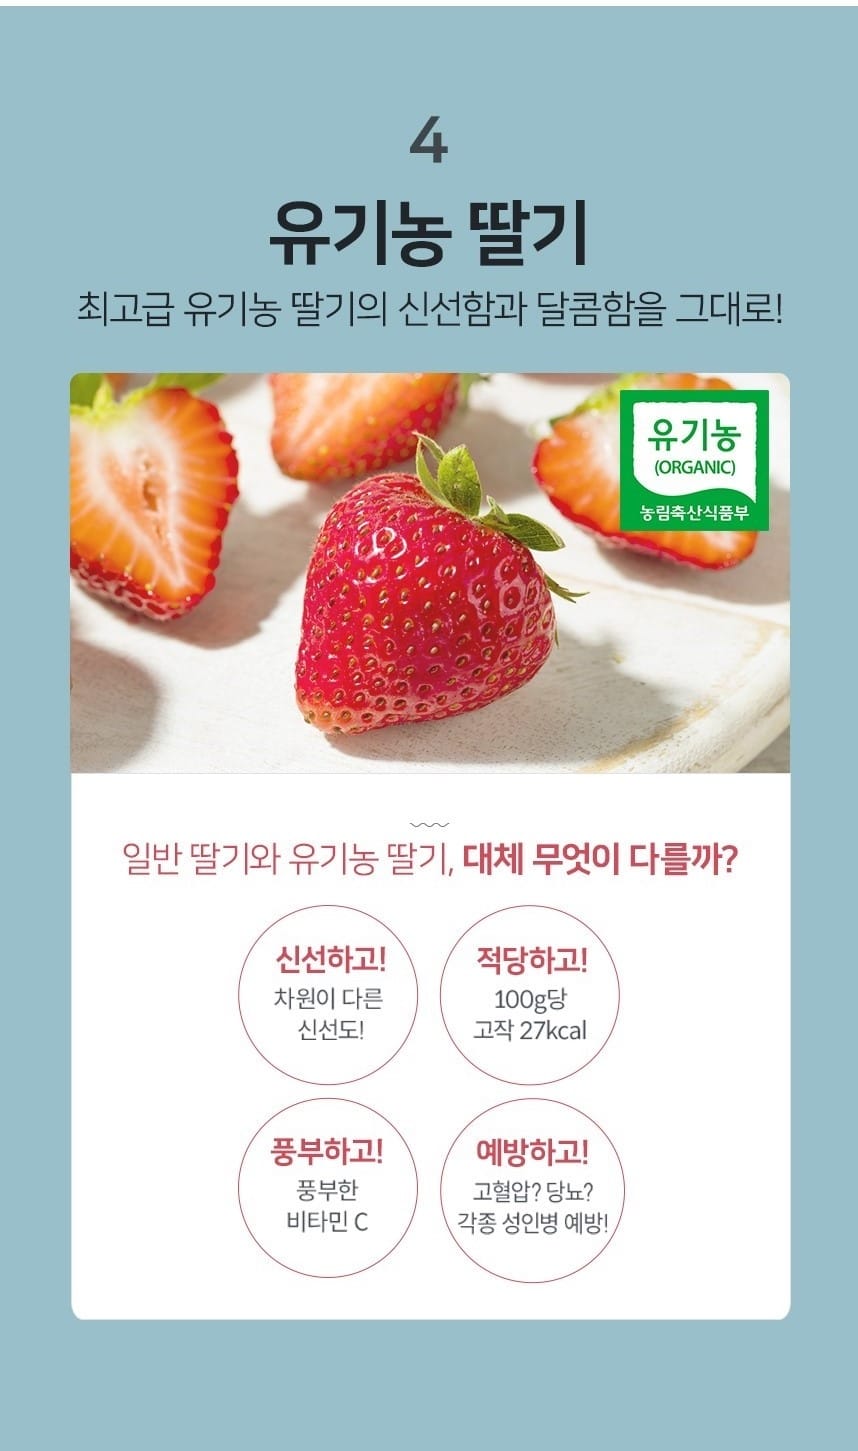 韓國食品-[떼르드글라스]유기농 딸기주스 220ml